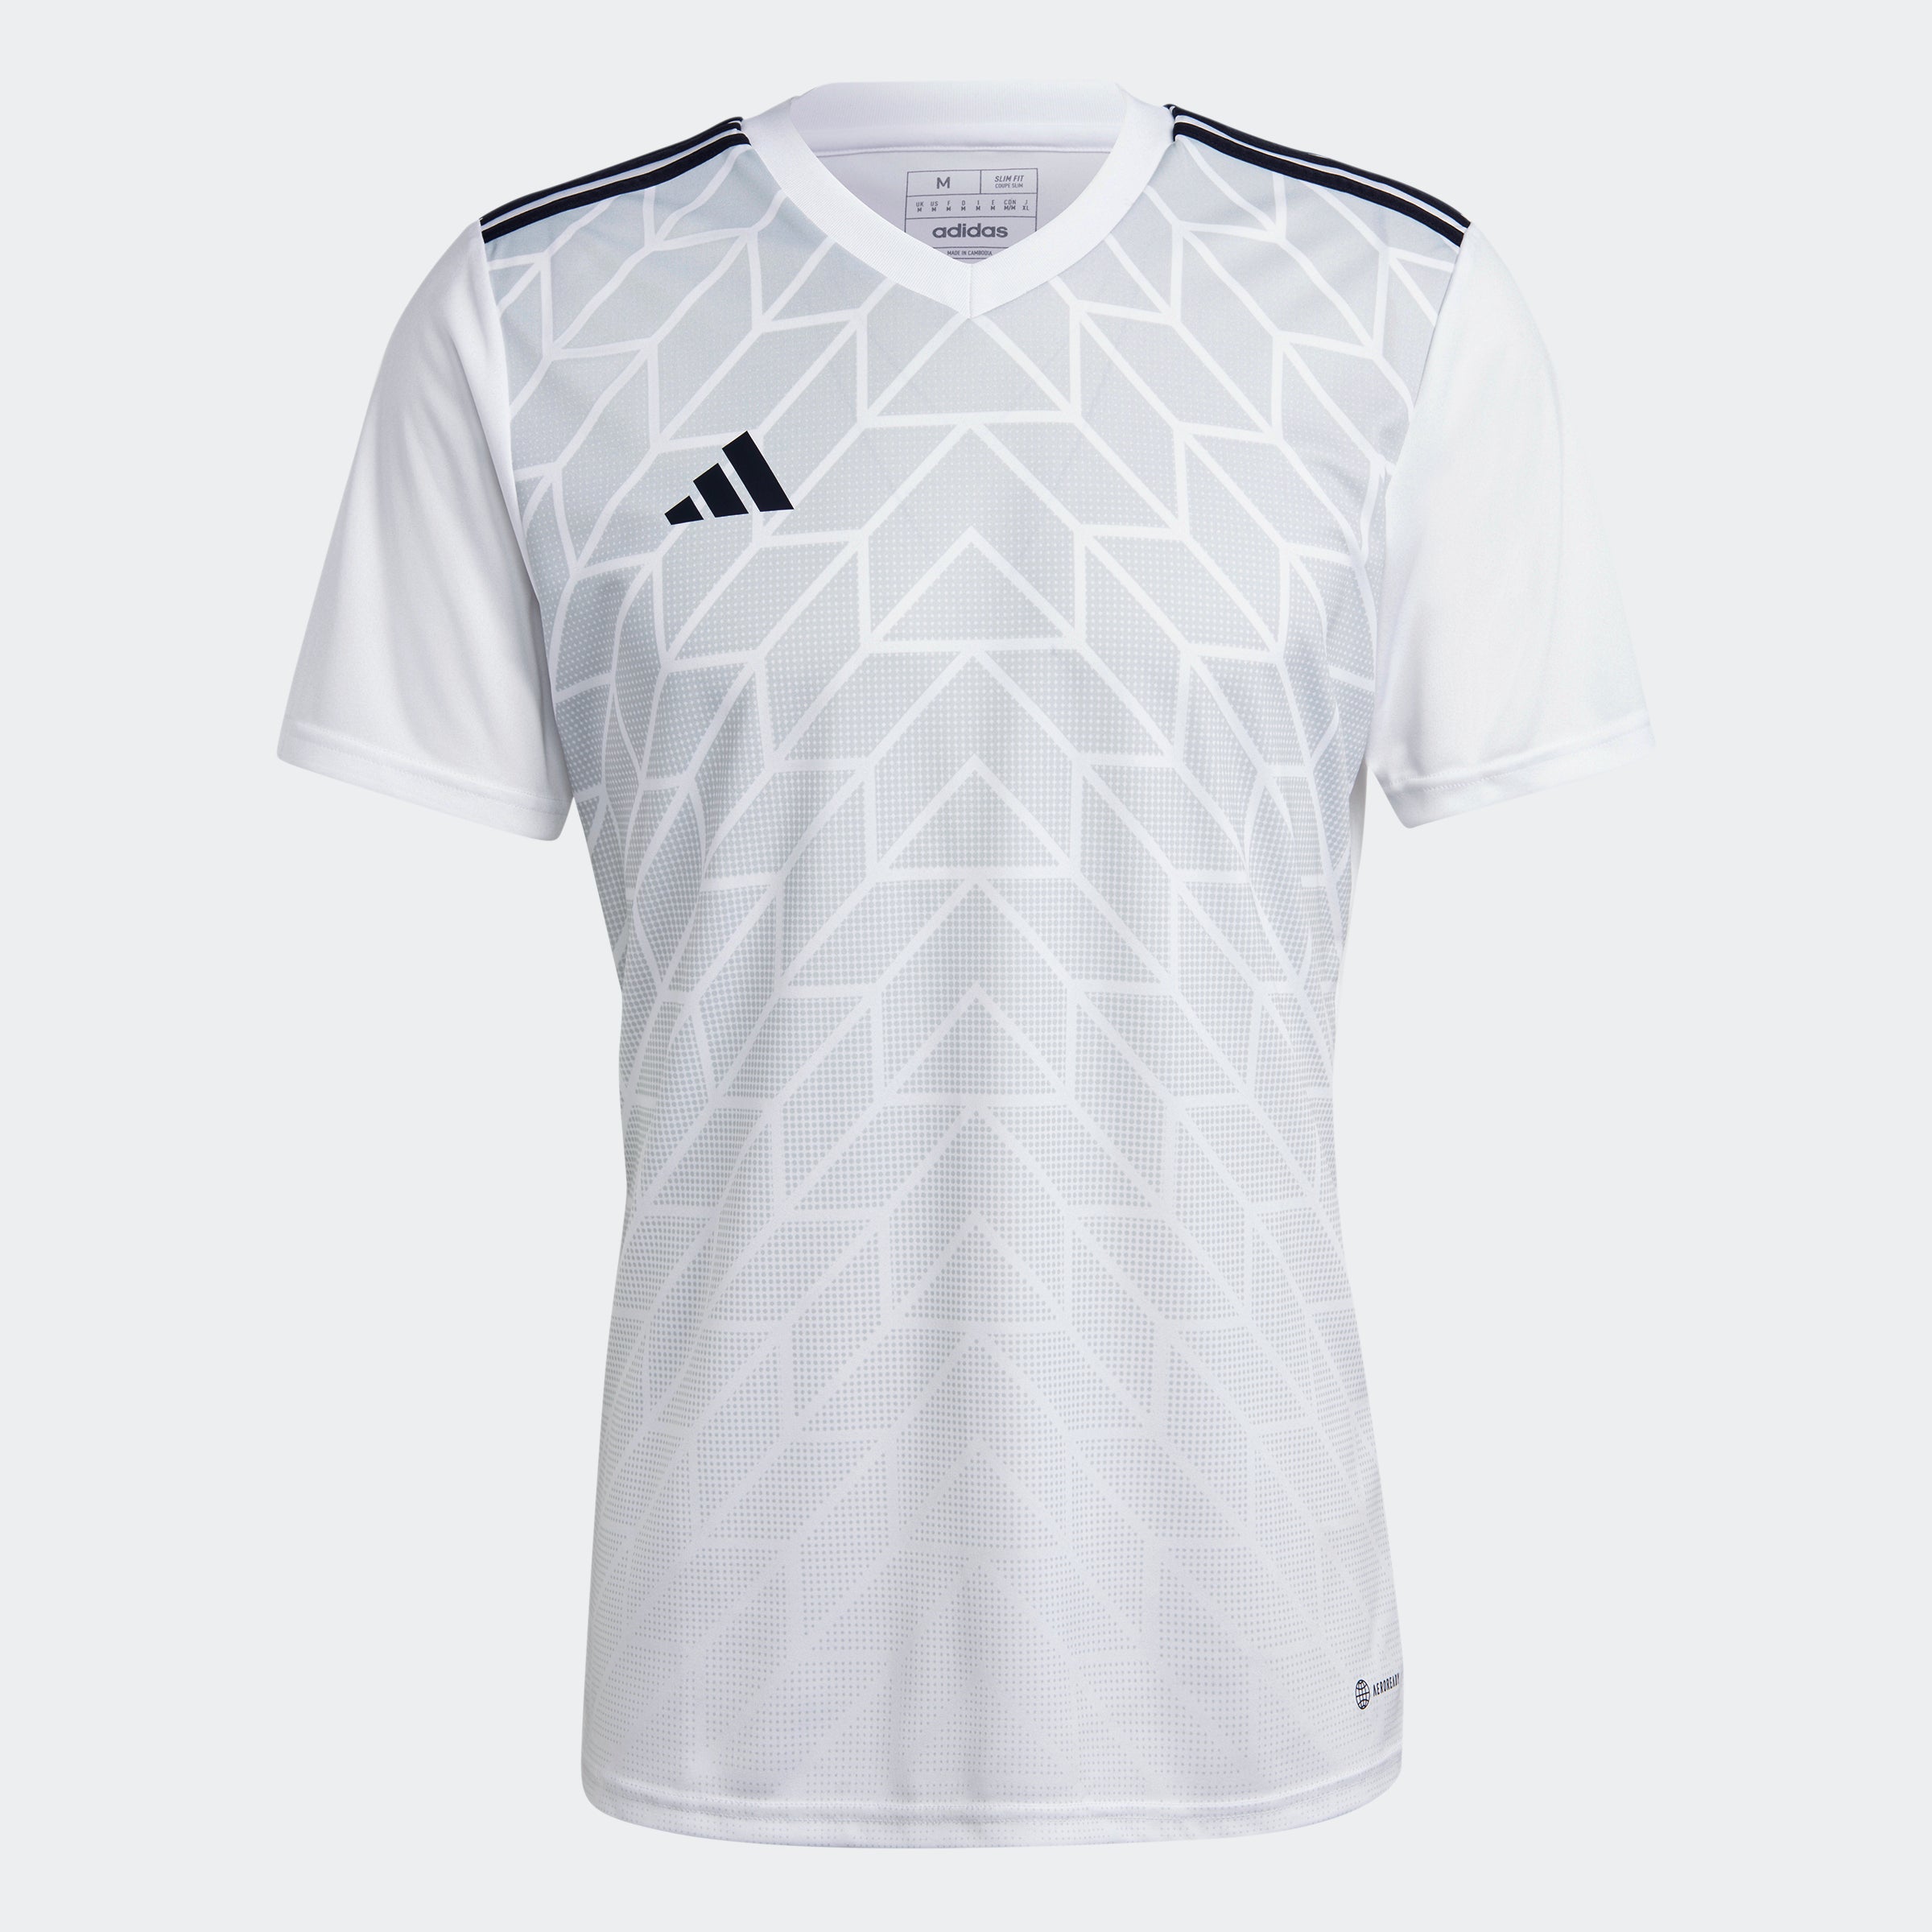 Brazil National Football Team Jerseys & Teamwear